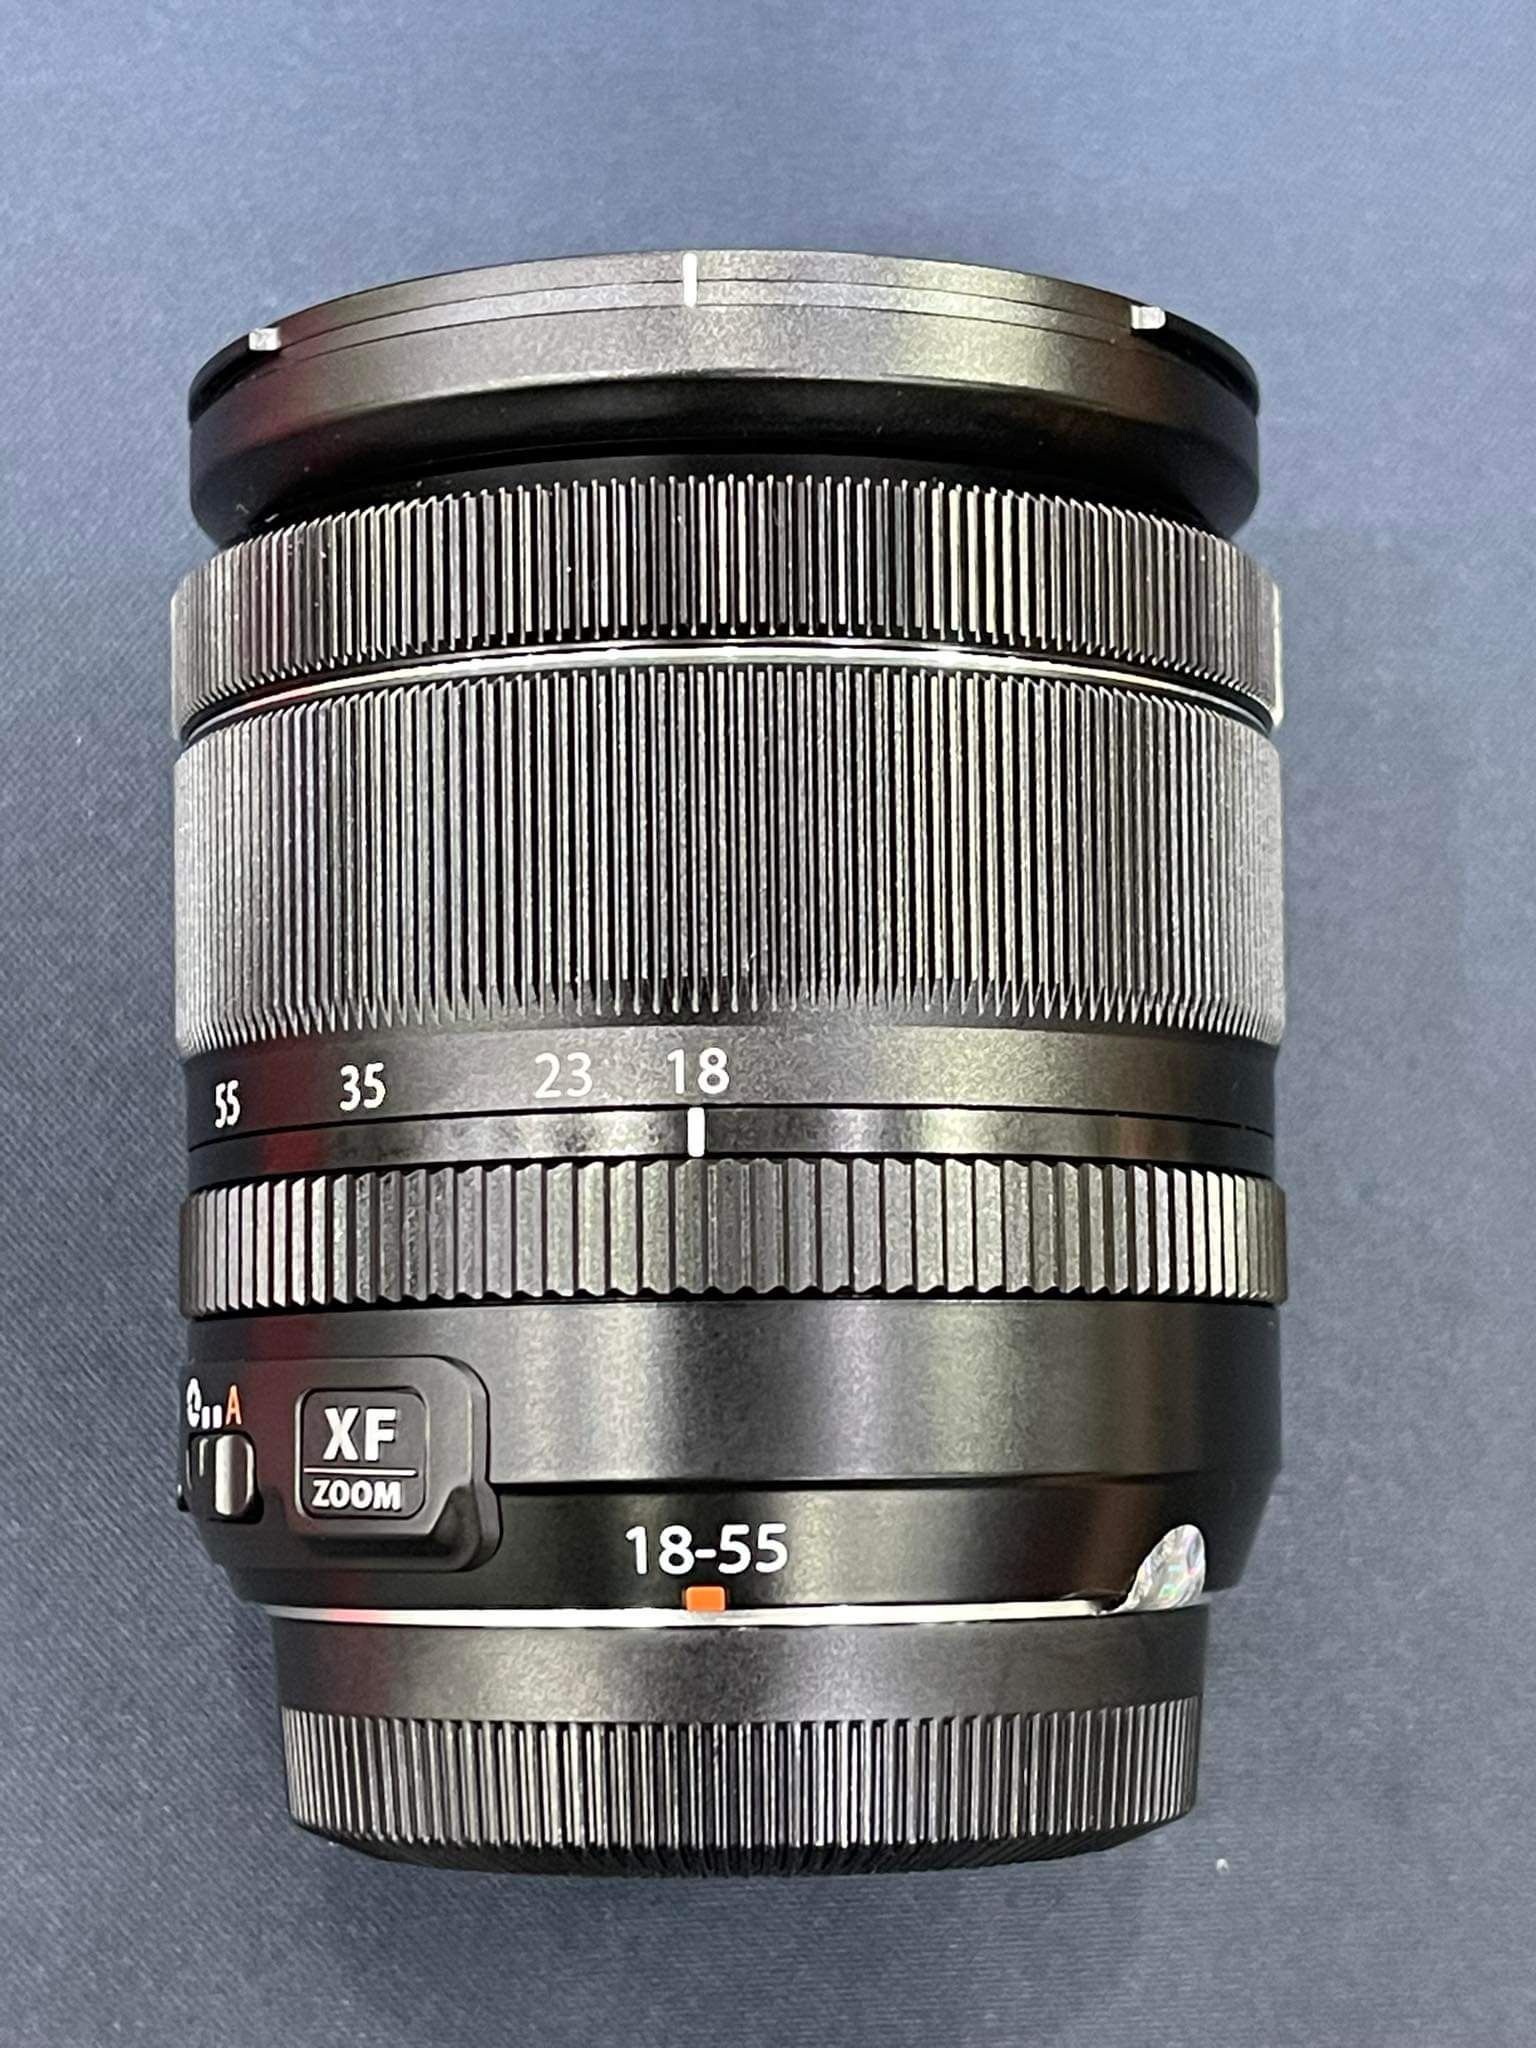 Fujifilm XF 18-55mm F2.8-4 ois cũ